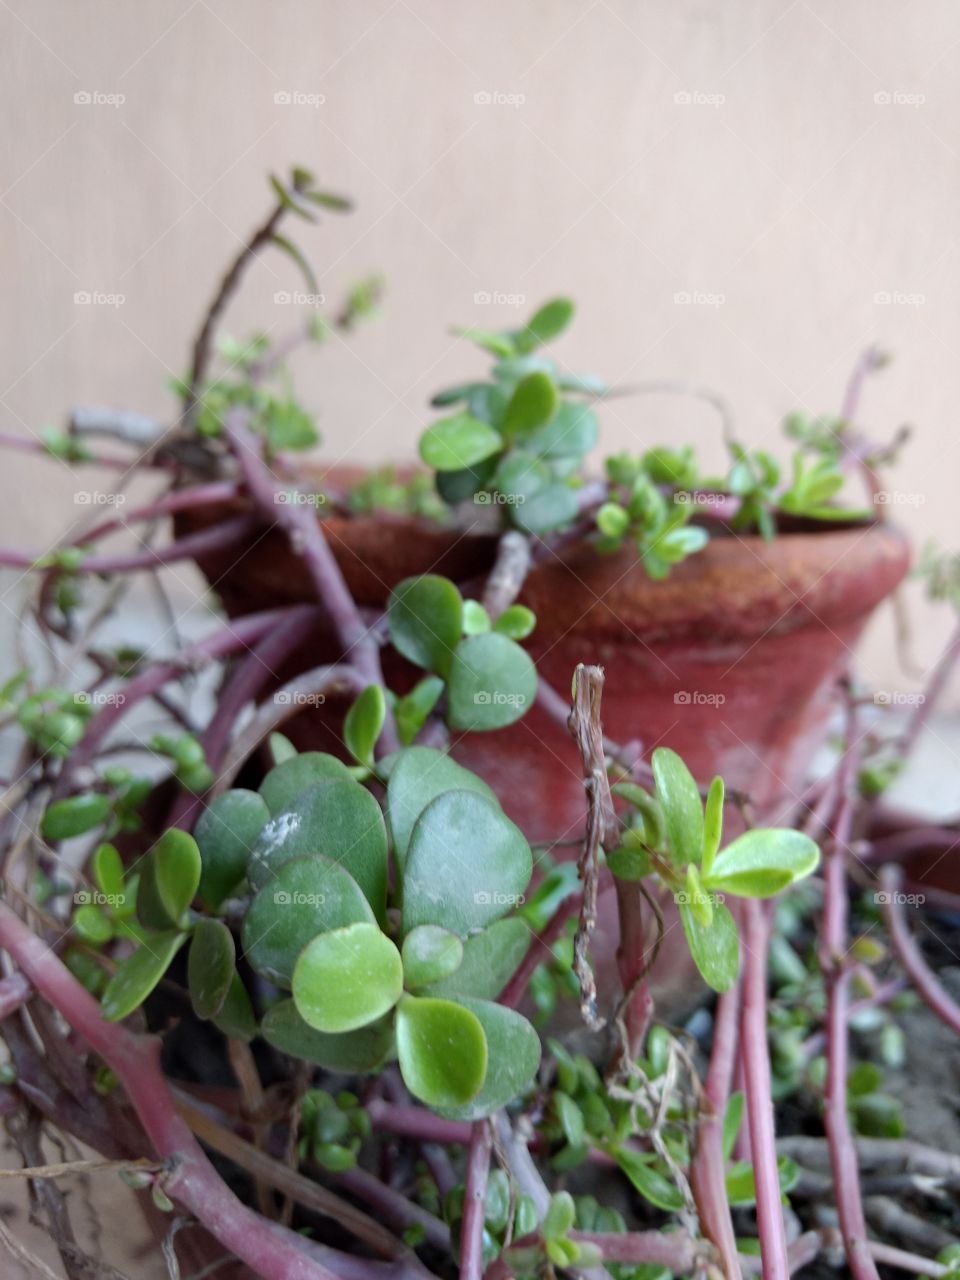 pot in a plant pot